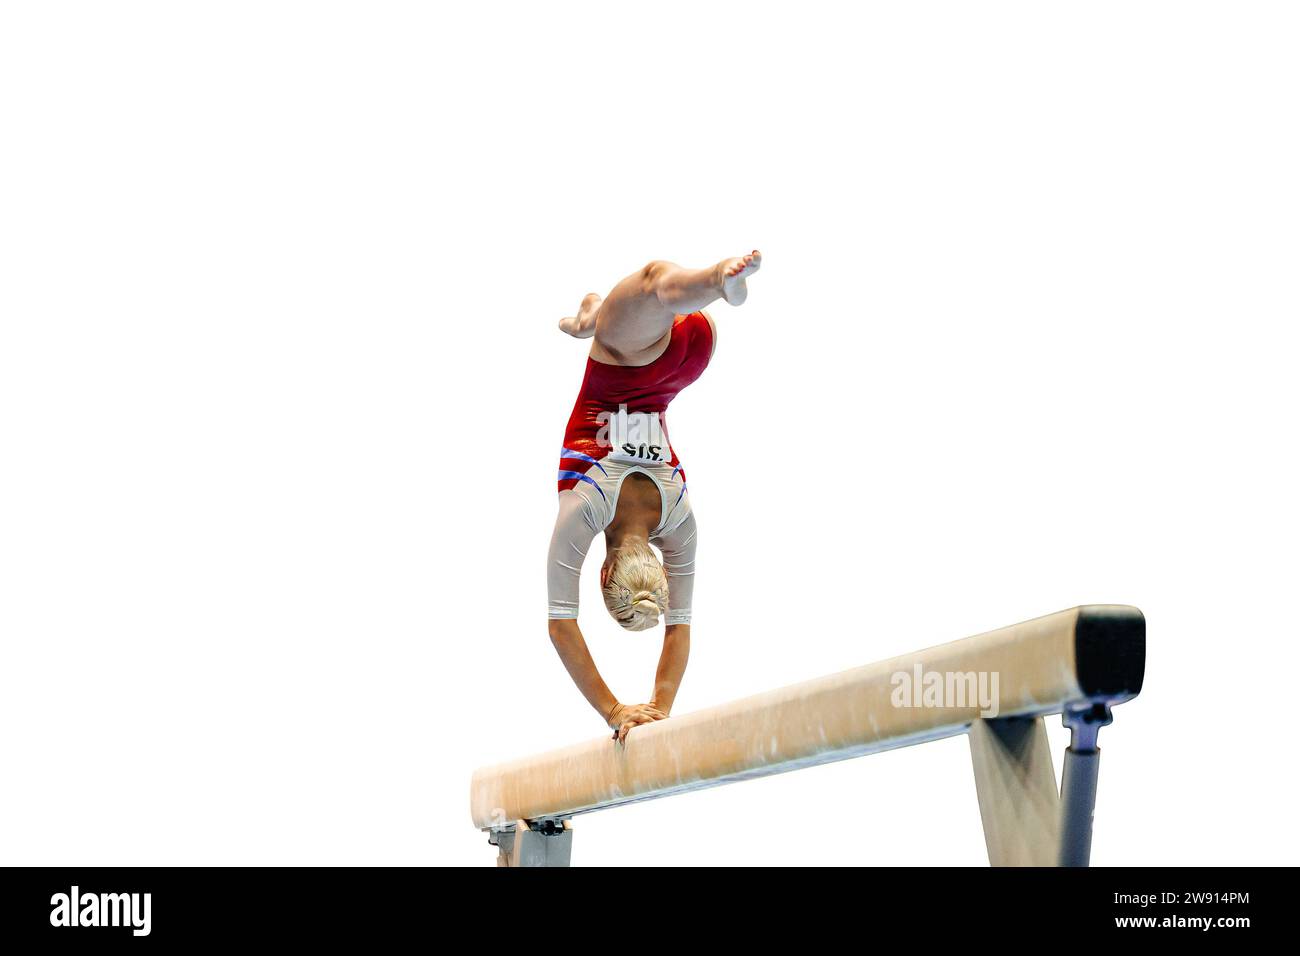 back female gymnast athlete flipping on balance beam gymnastics, isolated on white background Stock Photo